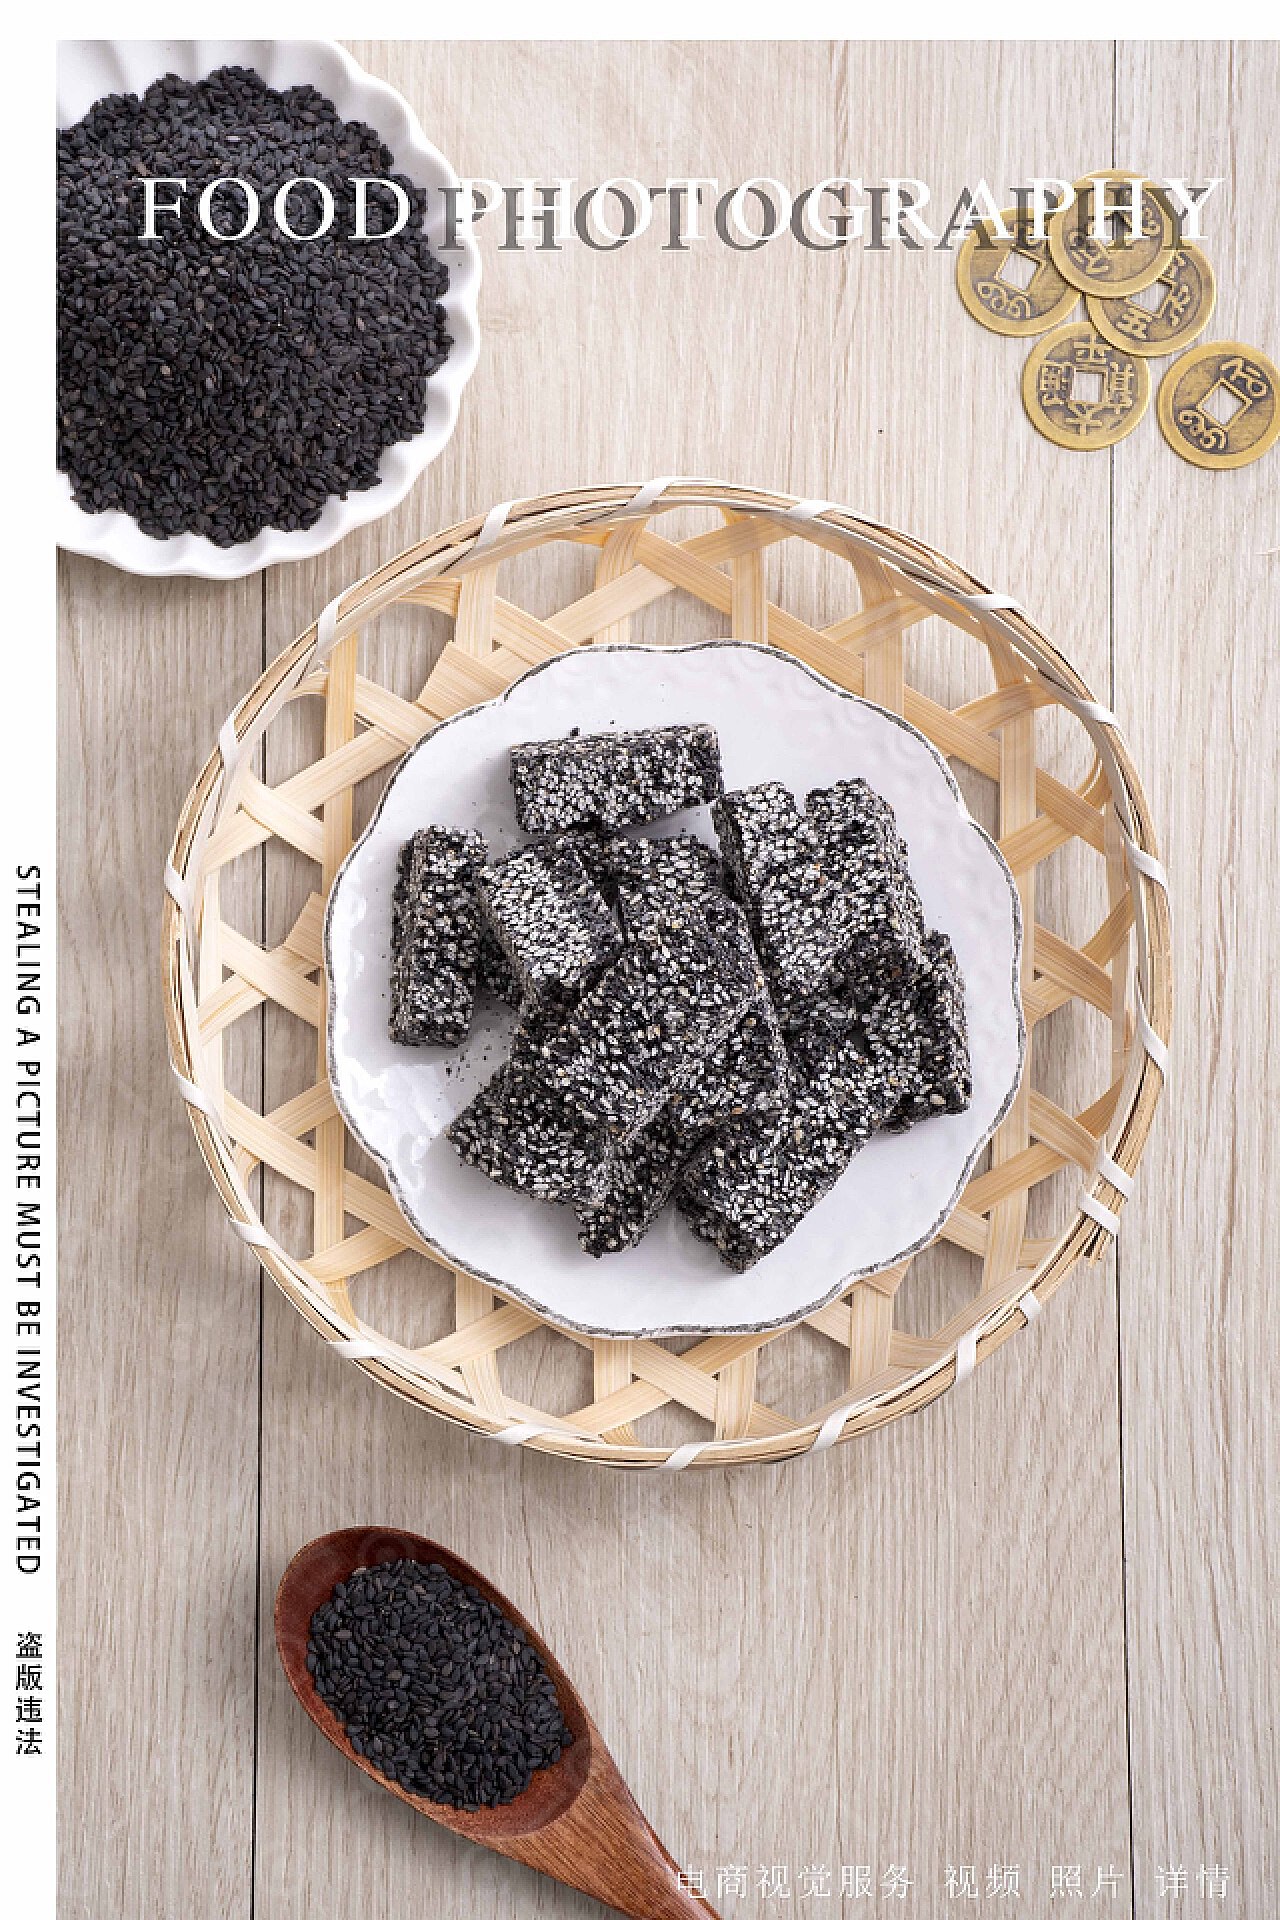 厨苑食谱: 黑芝麻酥 （Black Sesame Cookies)